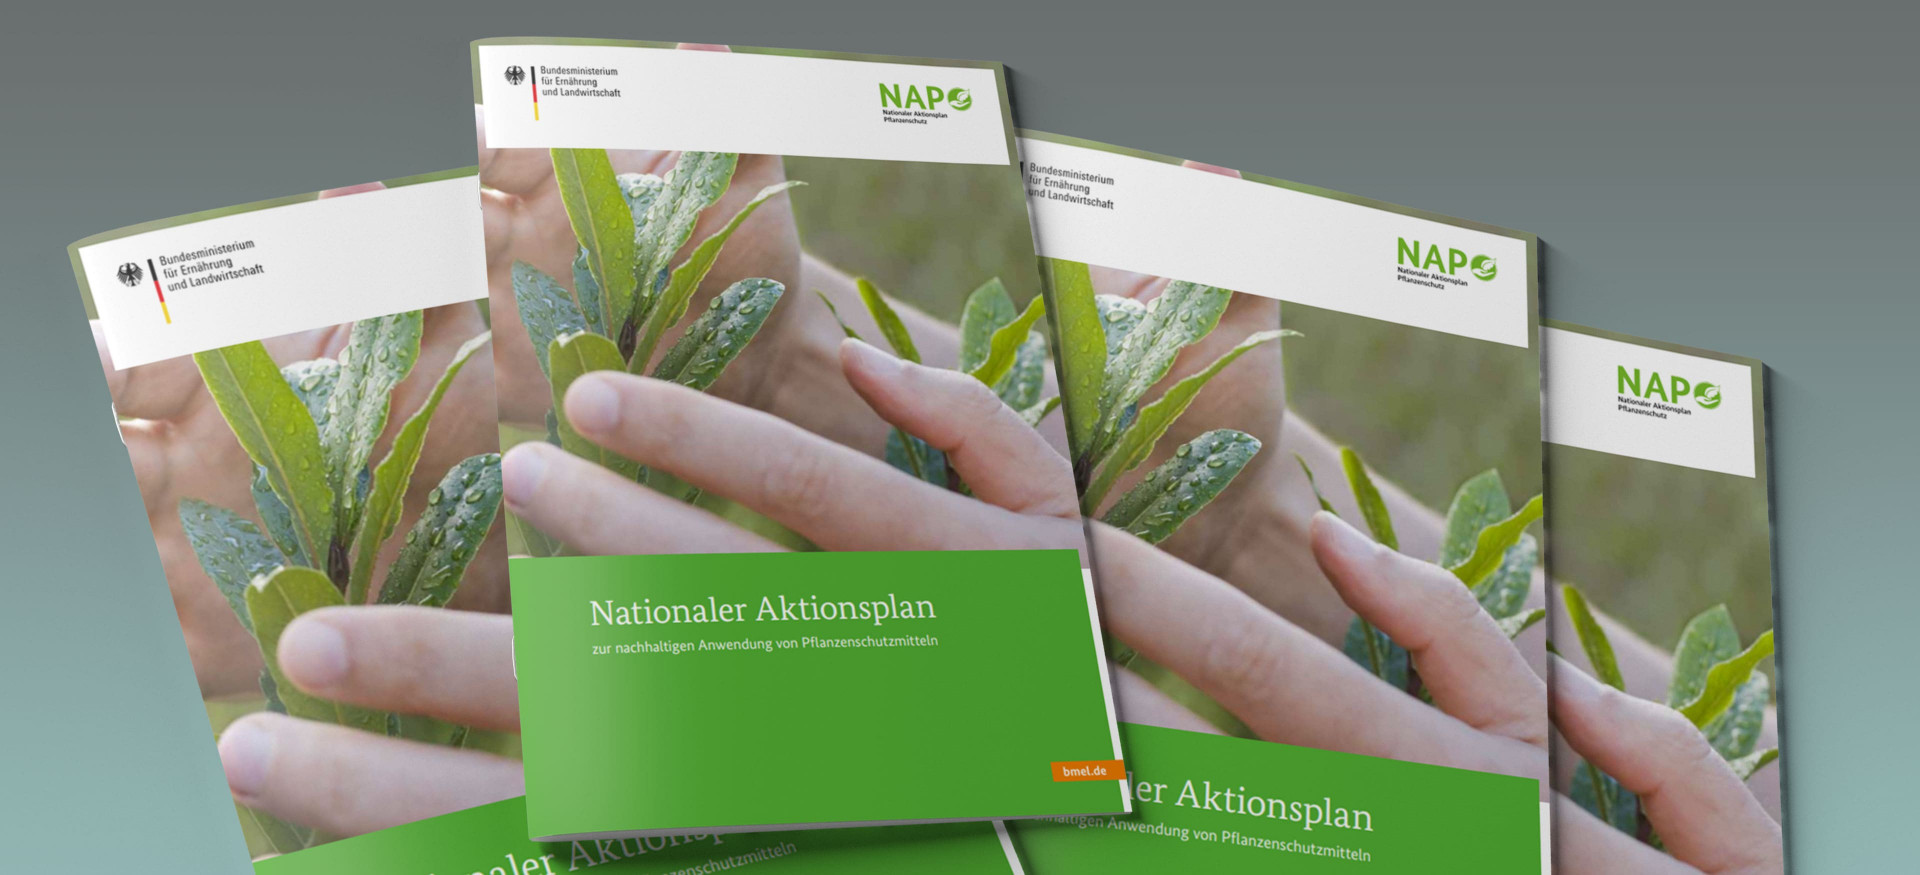 Das Bild zeigt einen Stapel Broschüren mit dem Titel "Nationaler Aktionsplan zur nachhaltigen Anwendung von Pflanzenschutzmitteln".